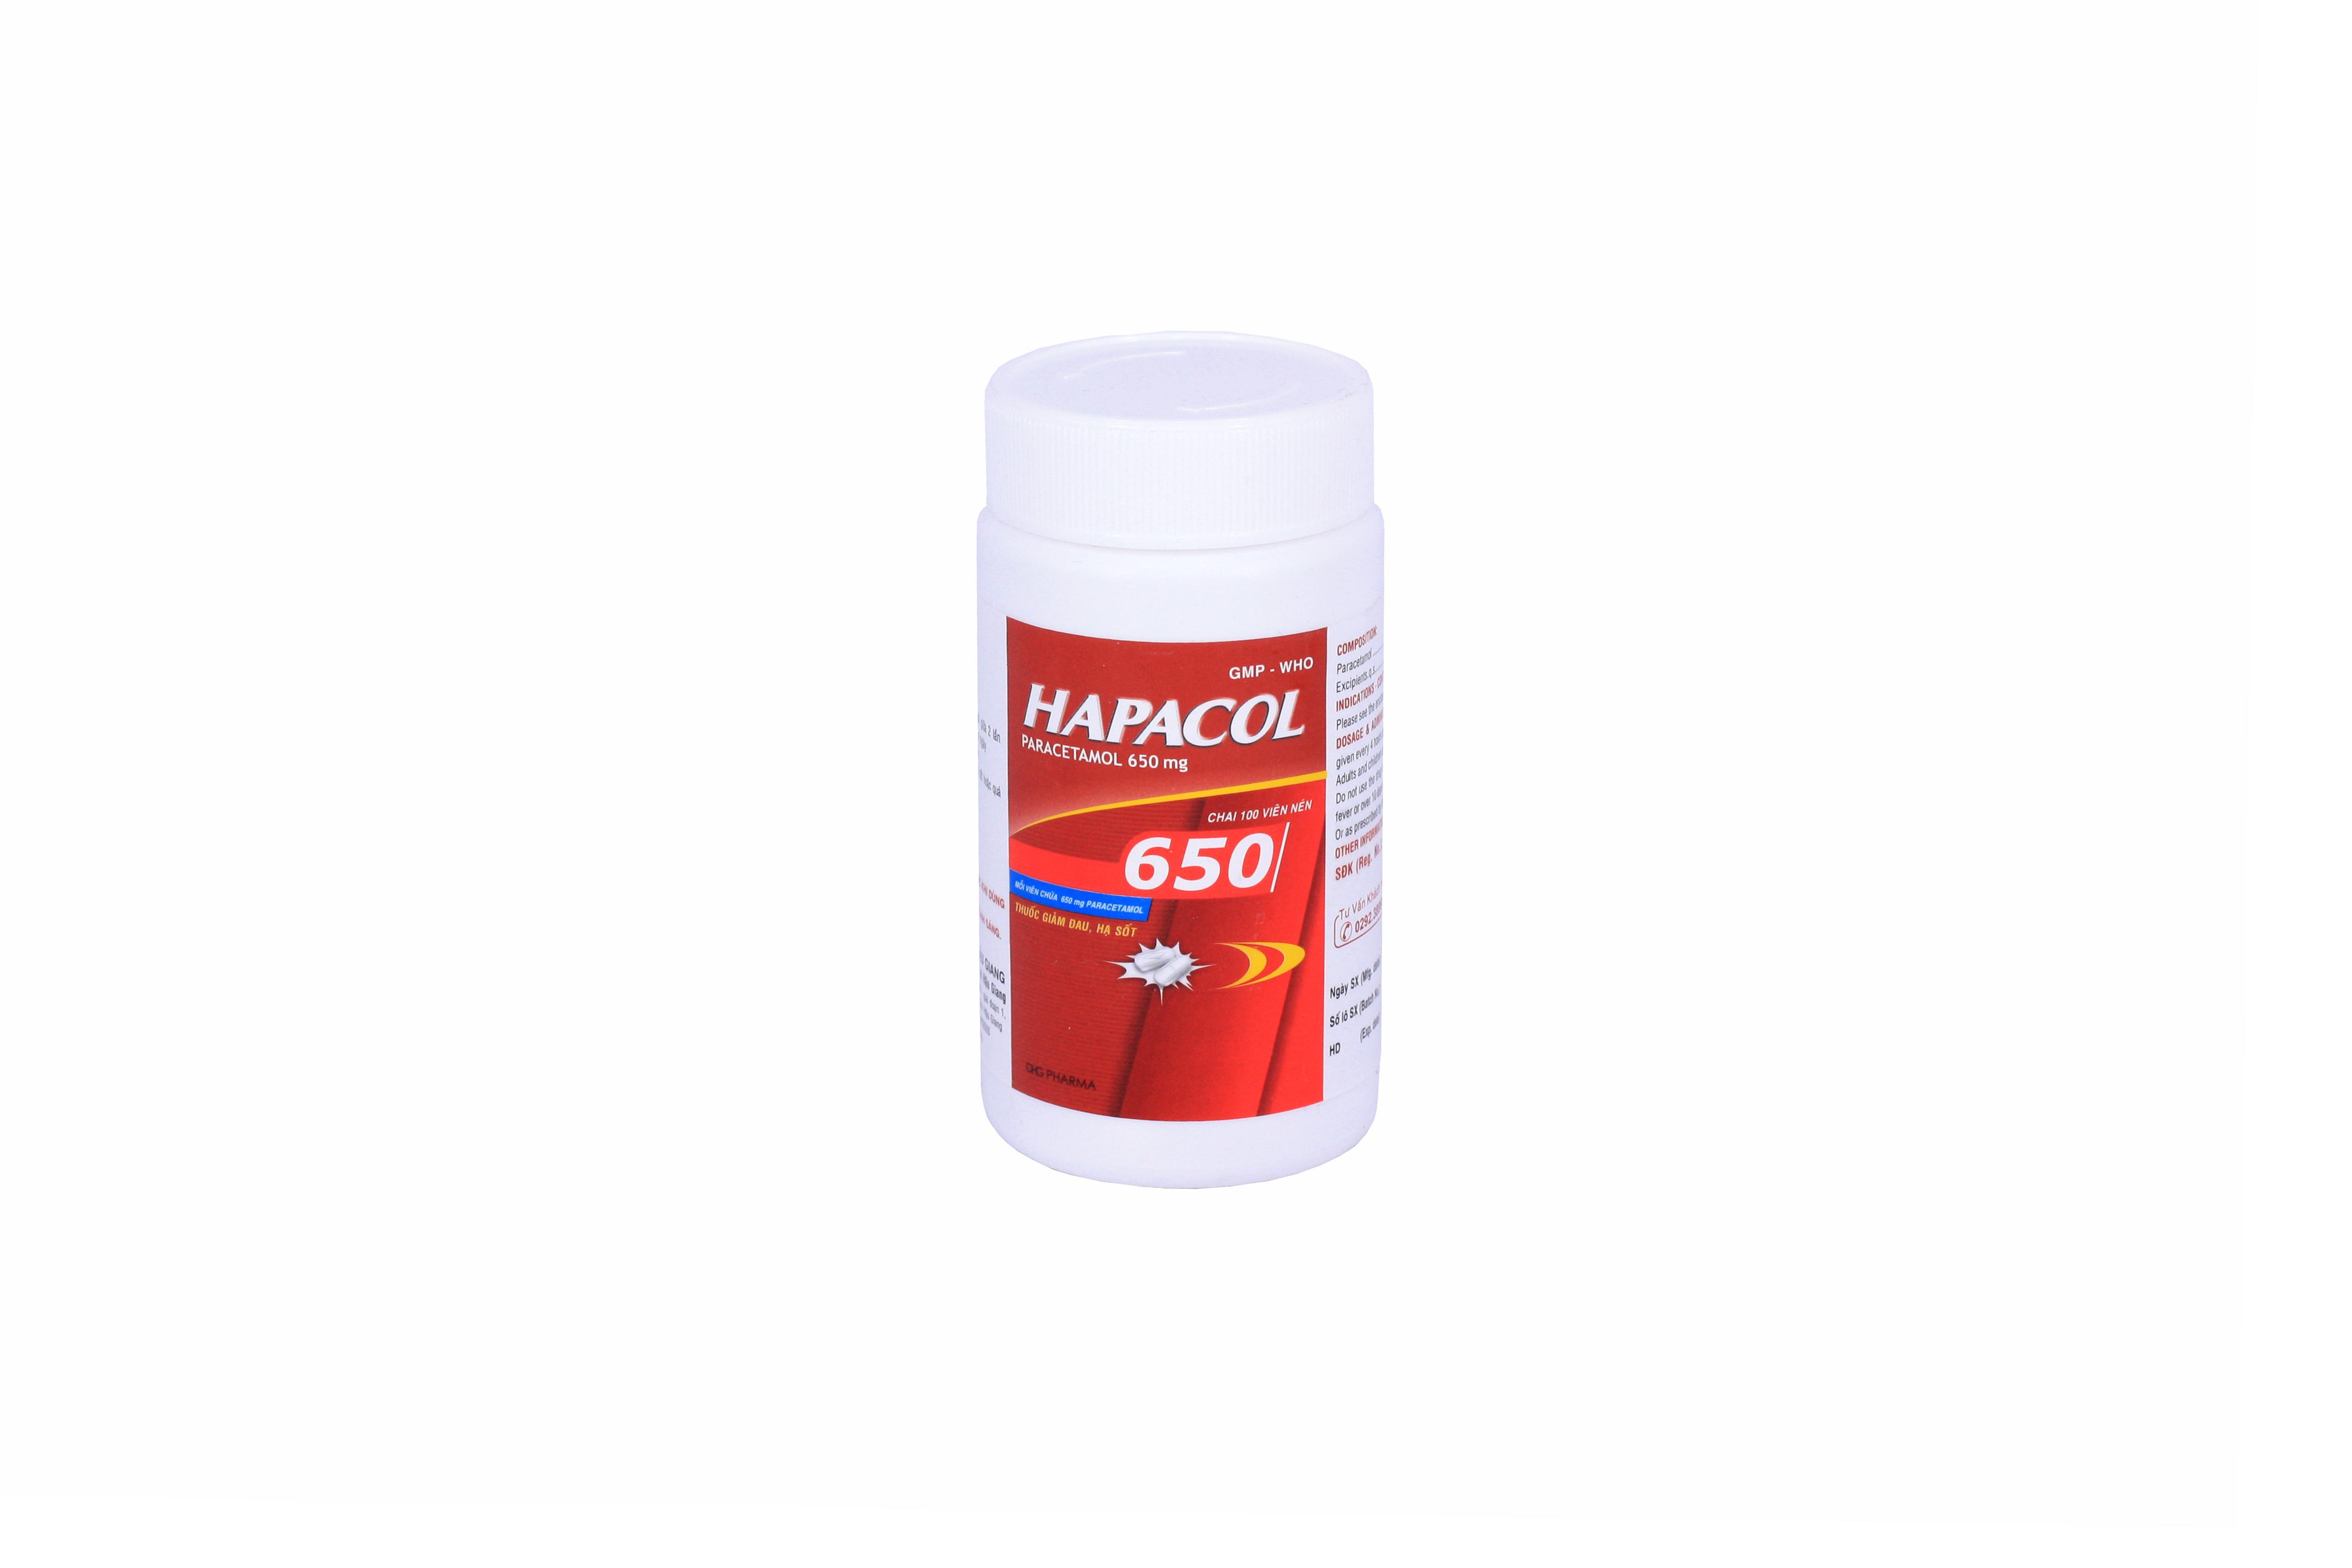 Hapacol (Paracetamol) 650mg DHG Pharma (C/100v)